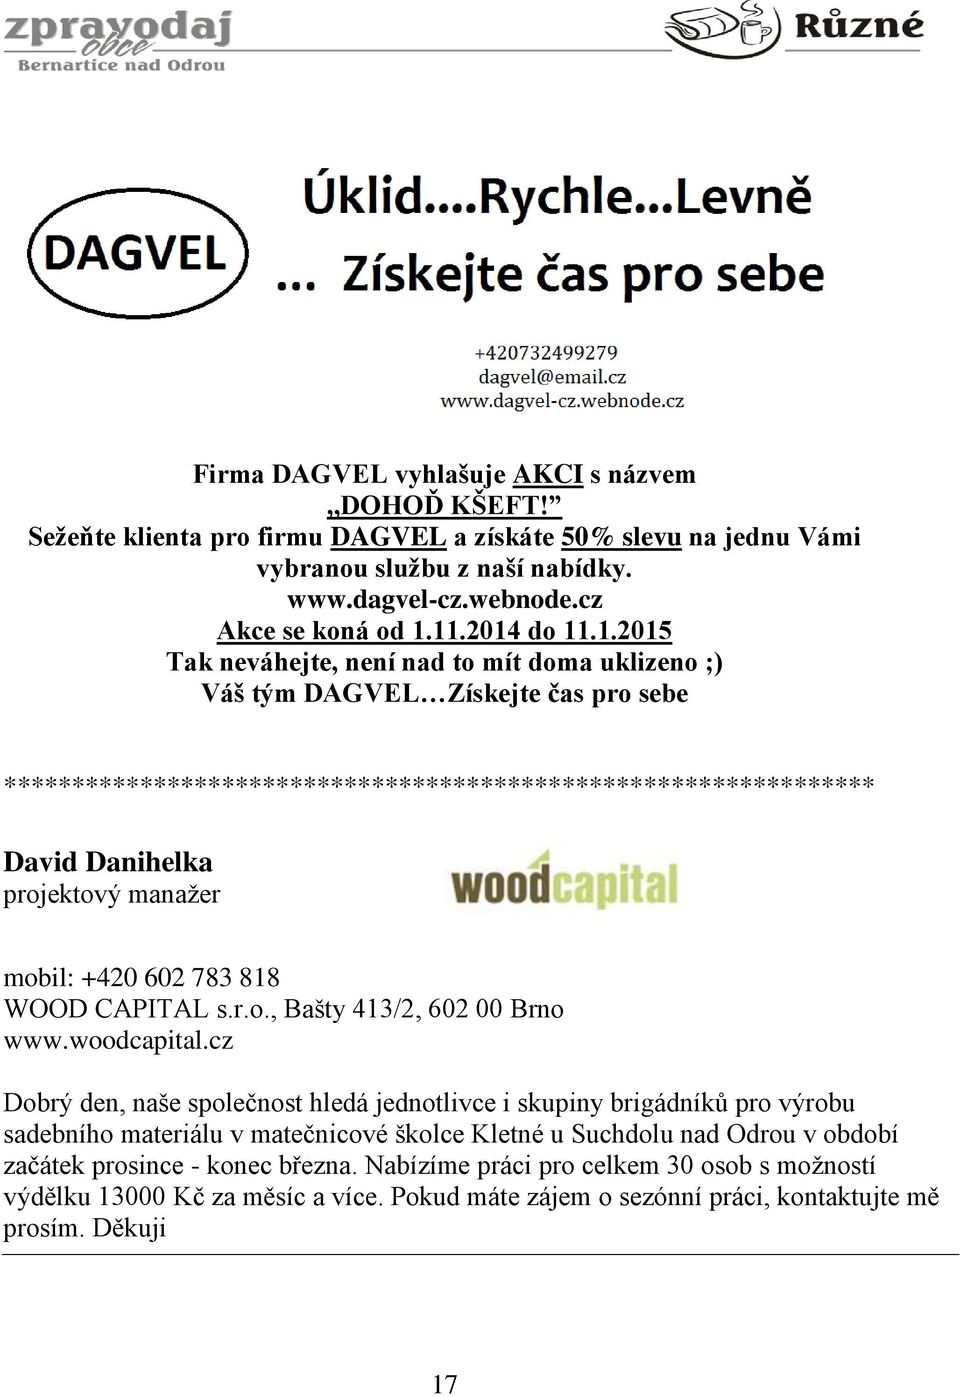 manažer mobil: +420 602 783 818 WOOD CAPITAL s.r.o., Bašty 413/2, 602 00 Brno www.woodcapital.